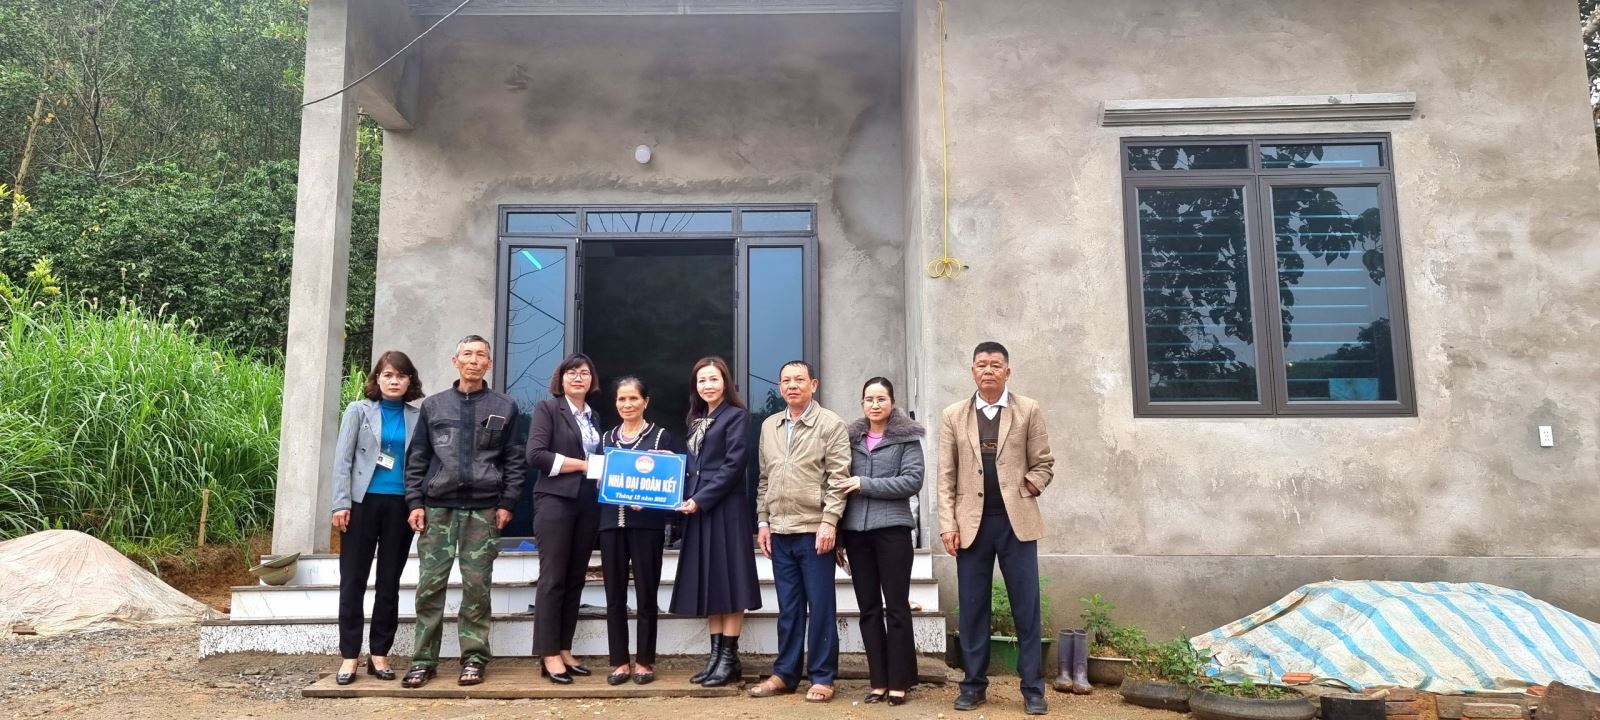 Ủy ban MTTQ thành phố Tuyên Quang trao tiền hỗ trợ làm nhà đại đoàn kết cho hộ nghèo tại xã An Khang và xã Lưỡng Vượng thành phố Tuyên Quang